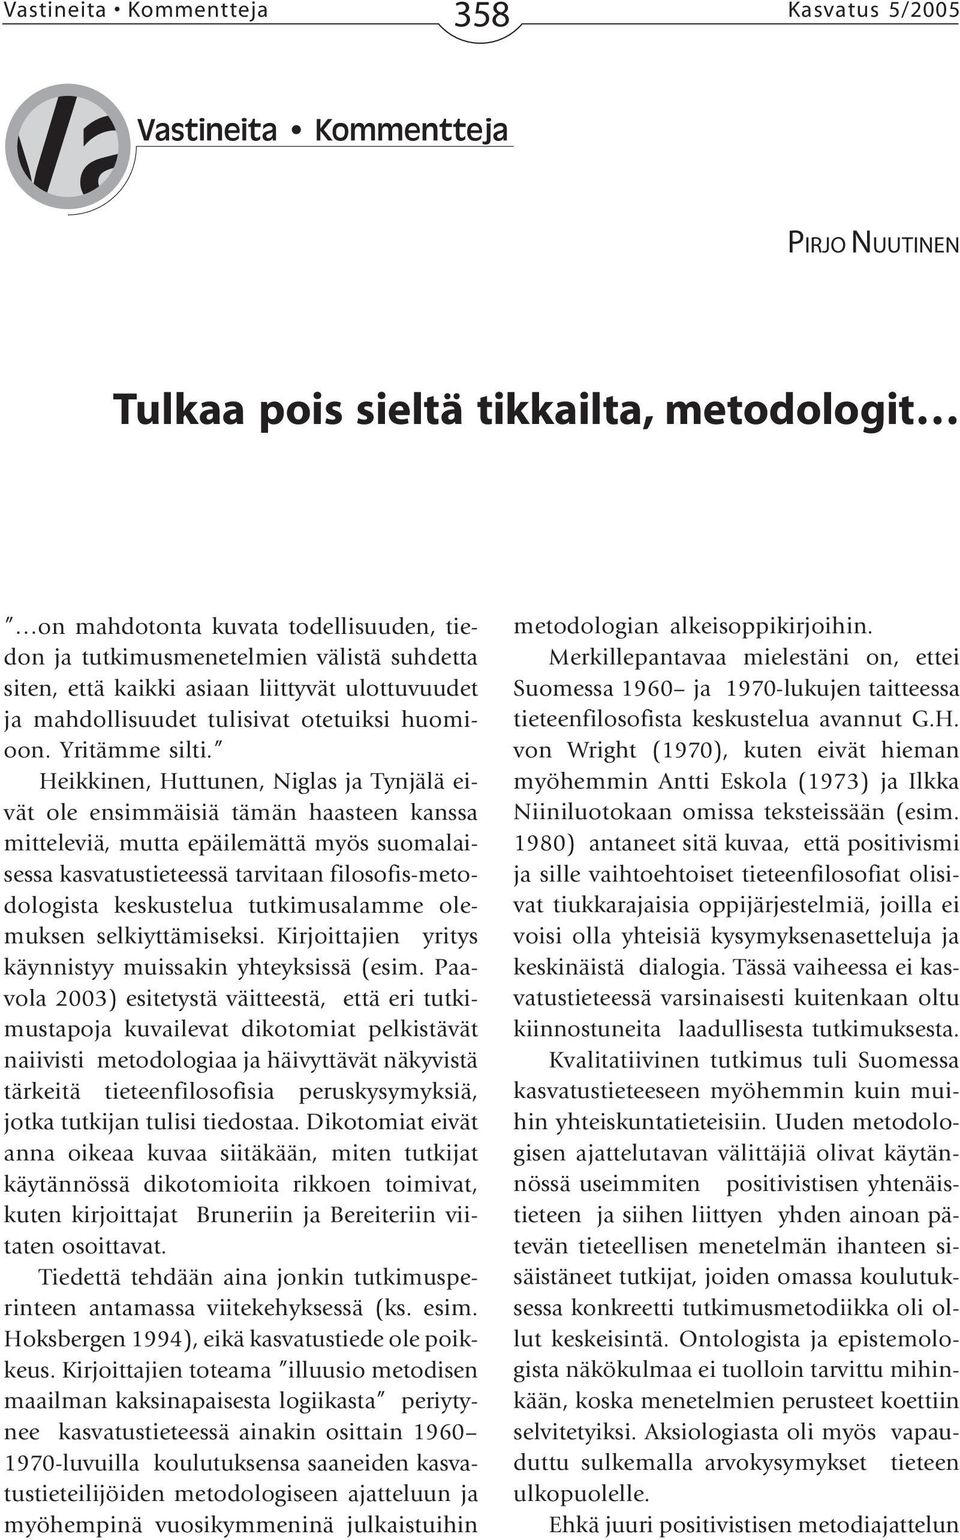 Heikkinen, Huttunen, Niglas ja Tynjälä eivät ole ensimmäisiä tämän haasteen kanssa mitteleviä, mutta epäilemättä myös suomalaisessa kasvatustieteessä tarvitaan filosofis-metodologista keskustelua